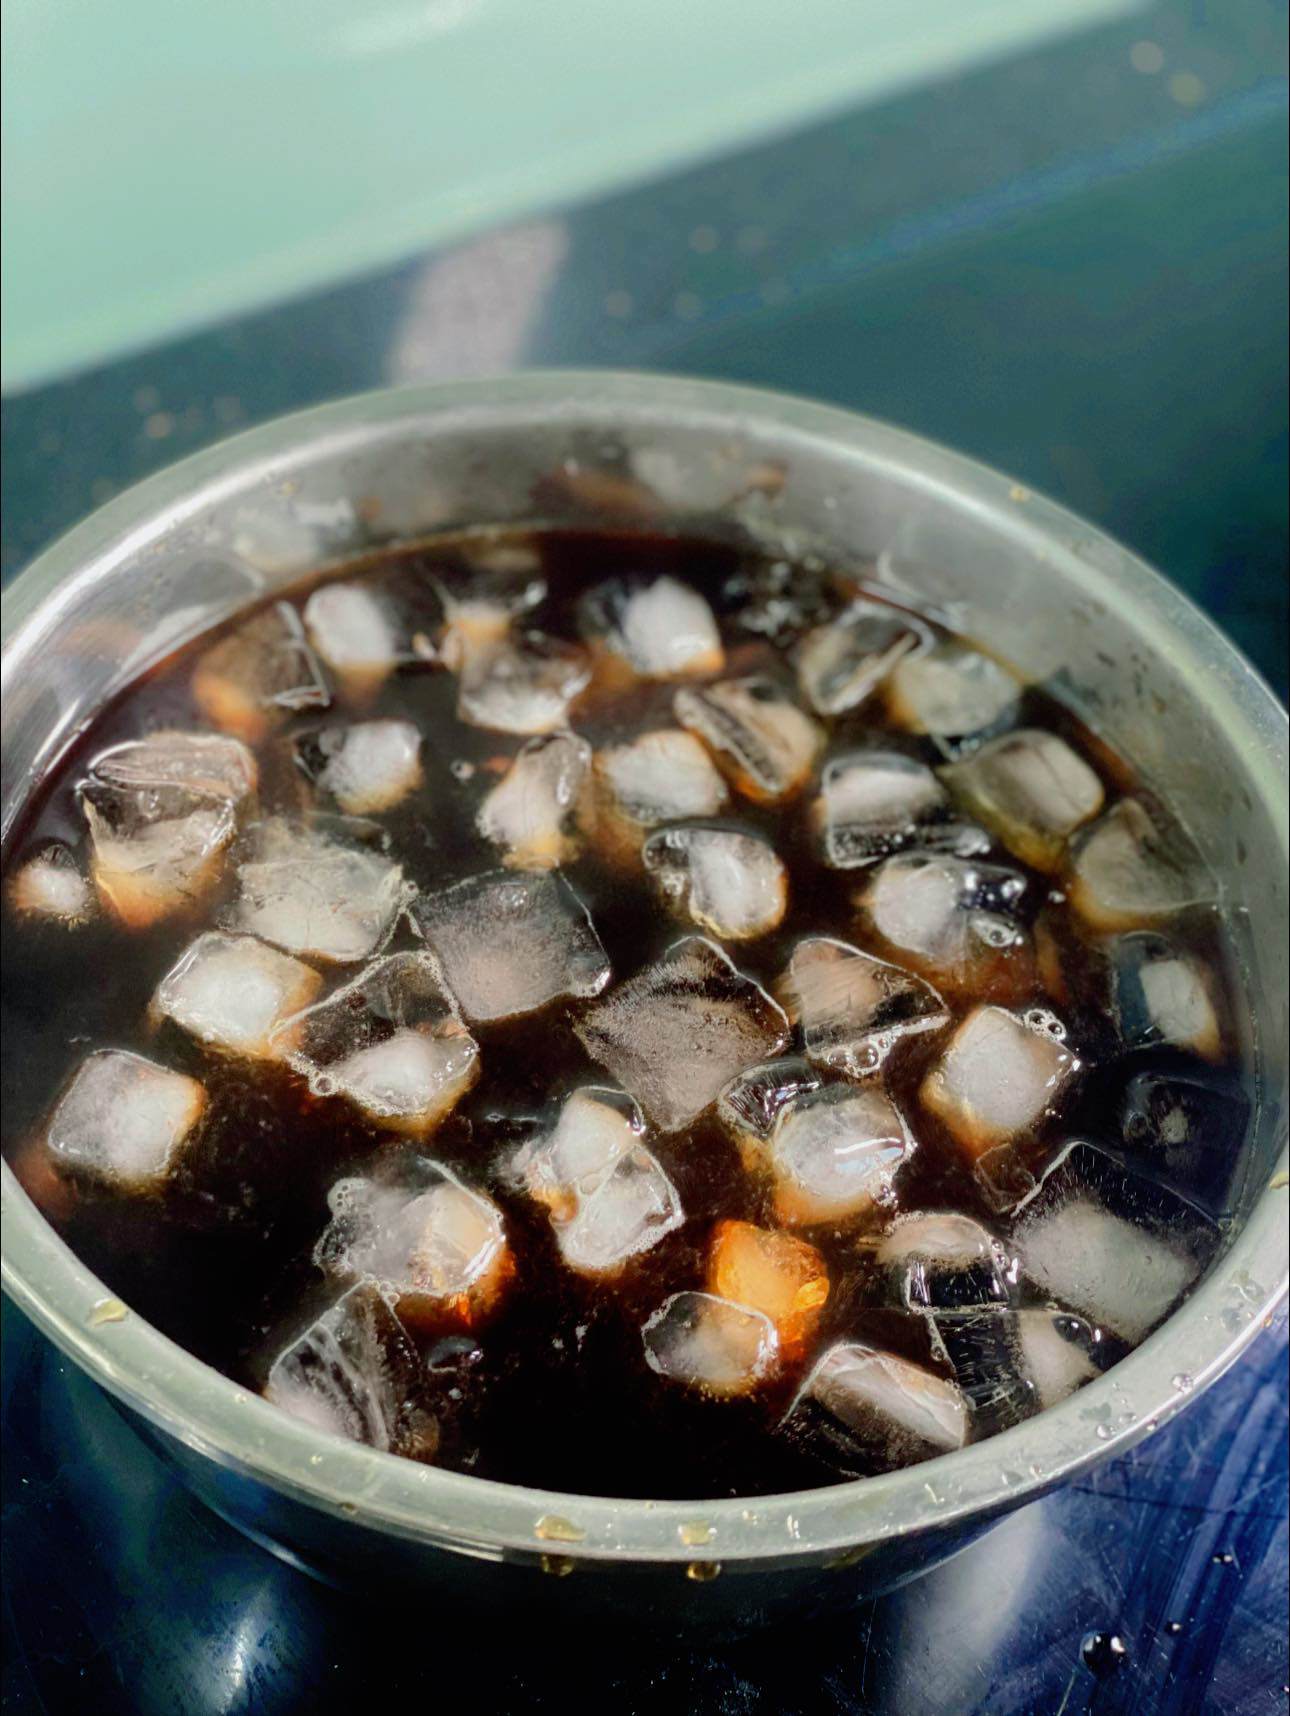 Trà sau khi hãm, thêm đá lạnh trực tiếp vào ngay khi trà còn nóng. Bước này giúp trà giữ được hương thơm.